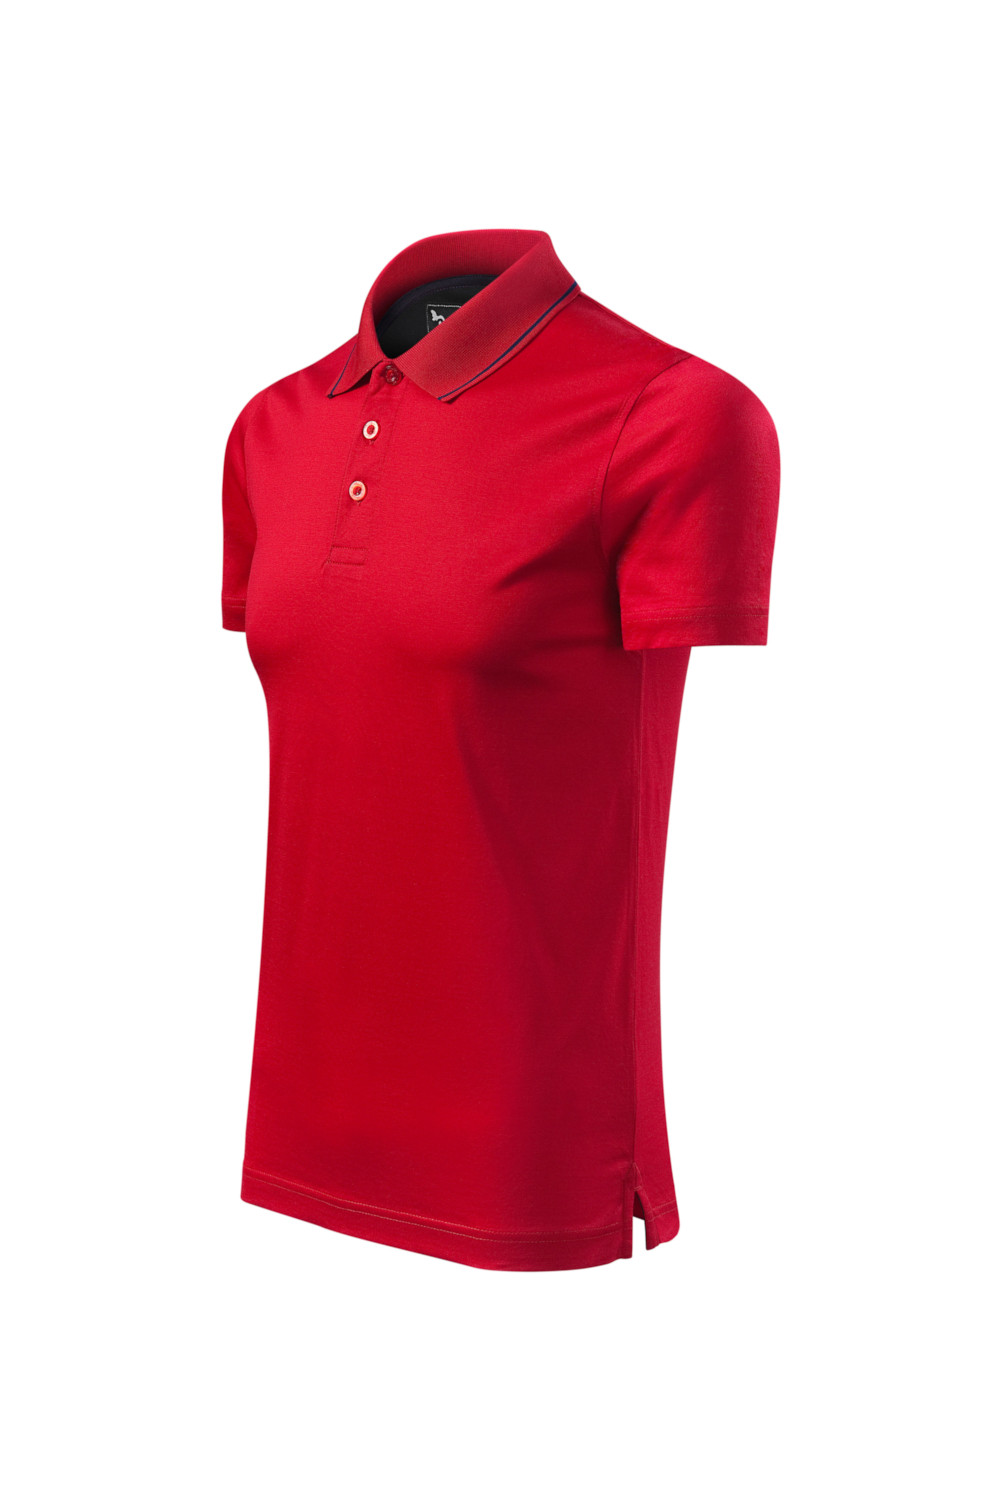 Koszulka Polo 100% bawełna merceryzowana HQ polo formuła red